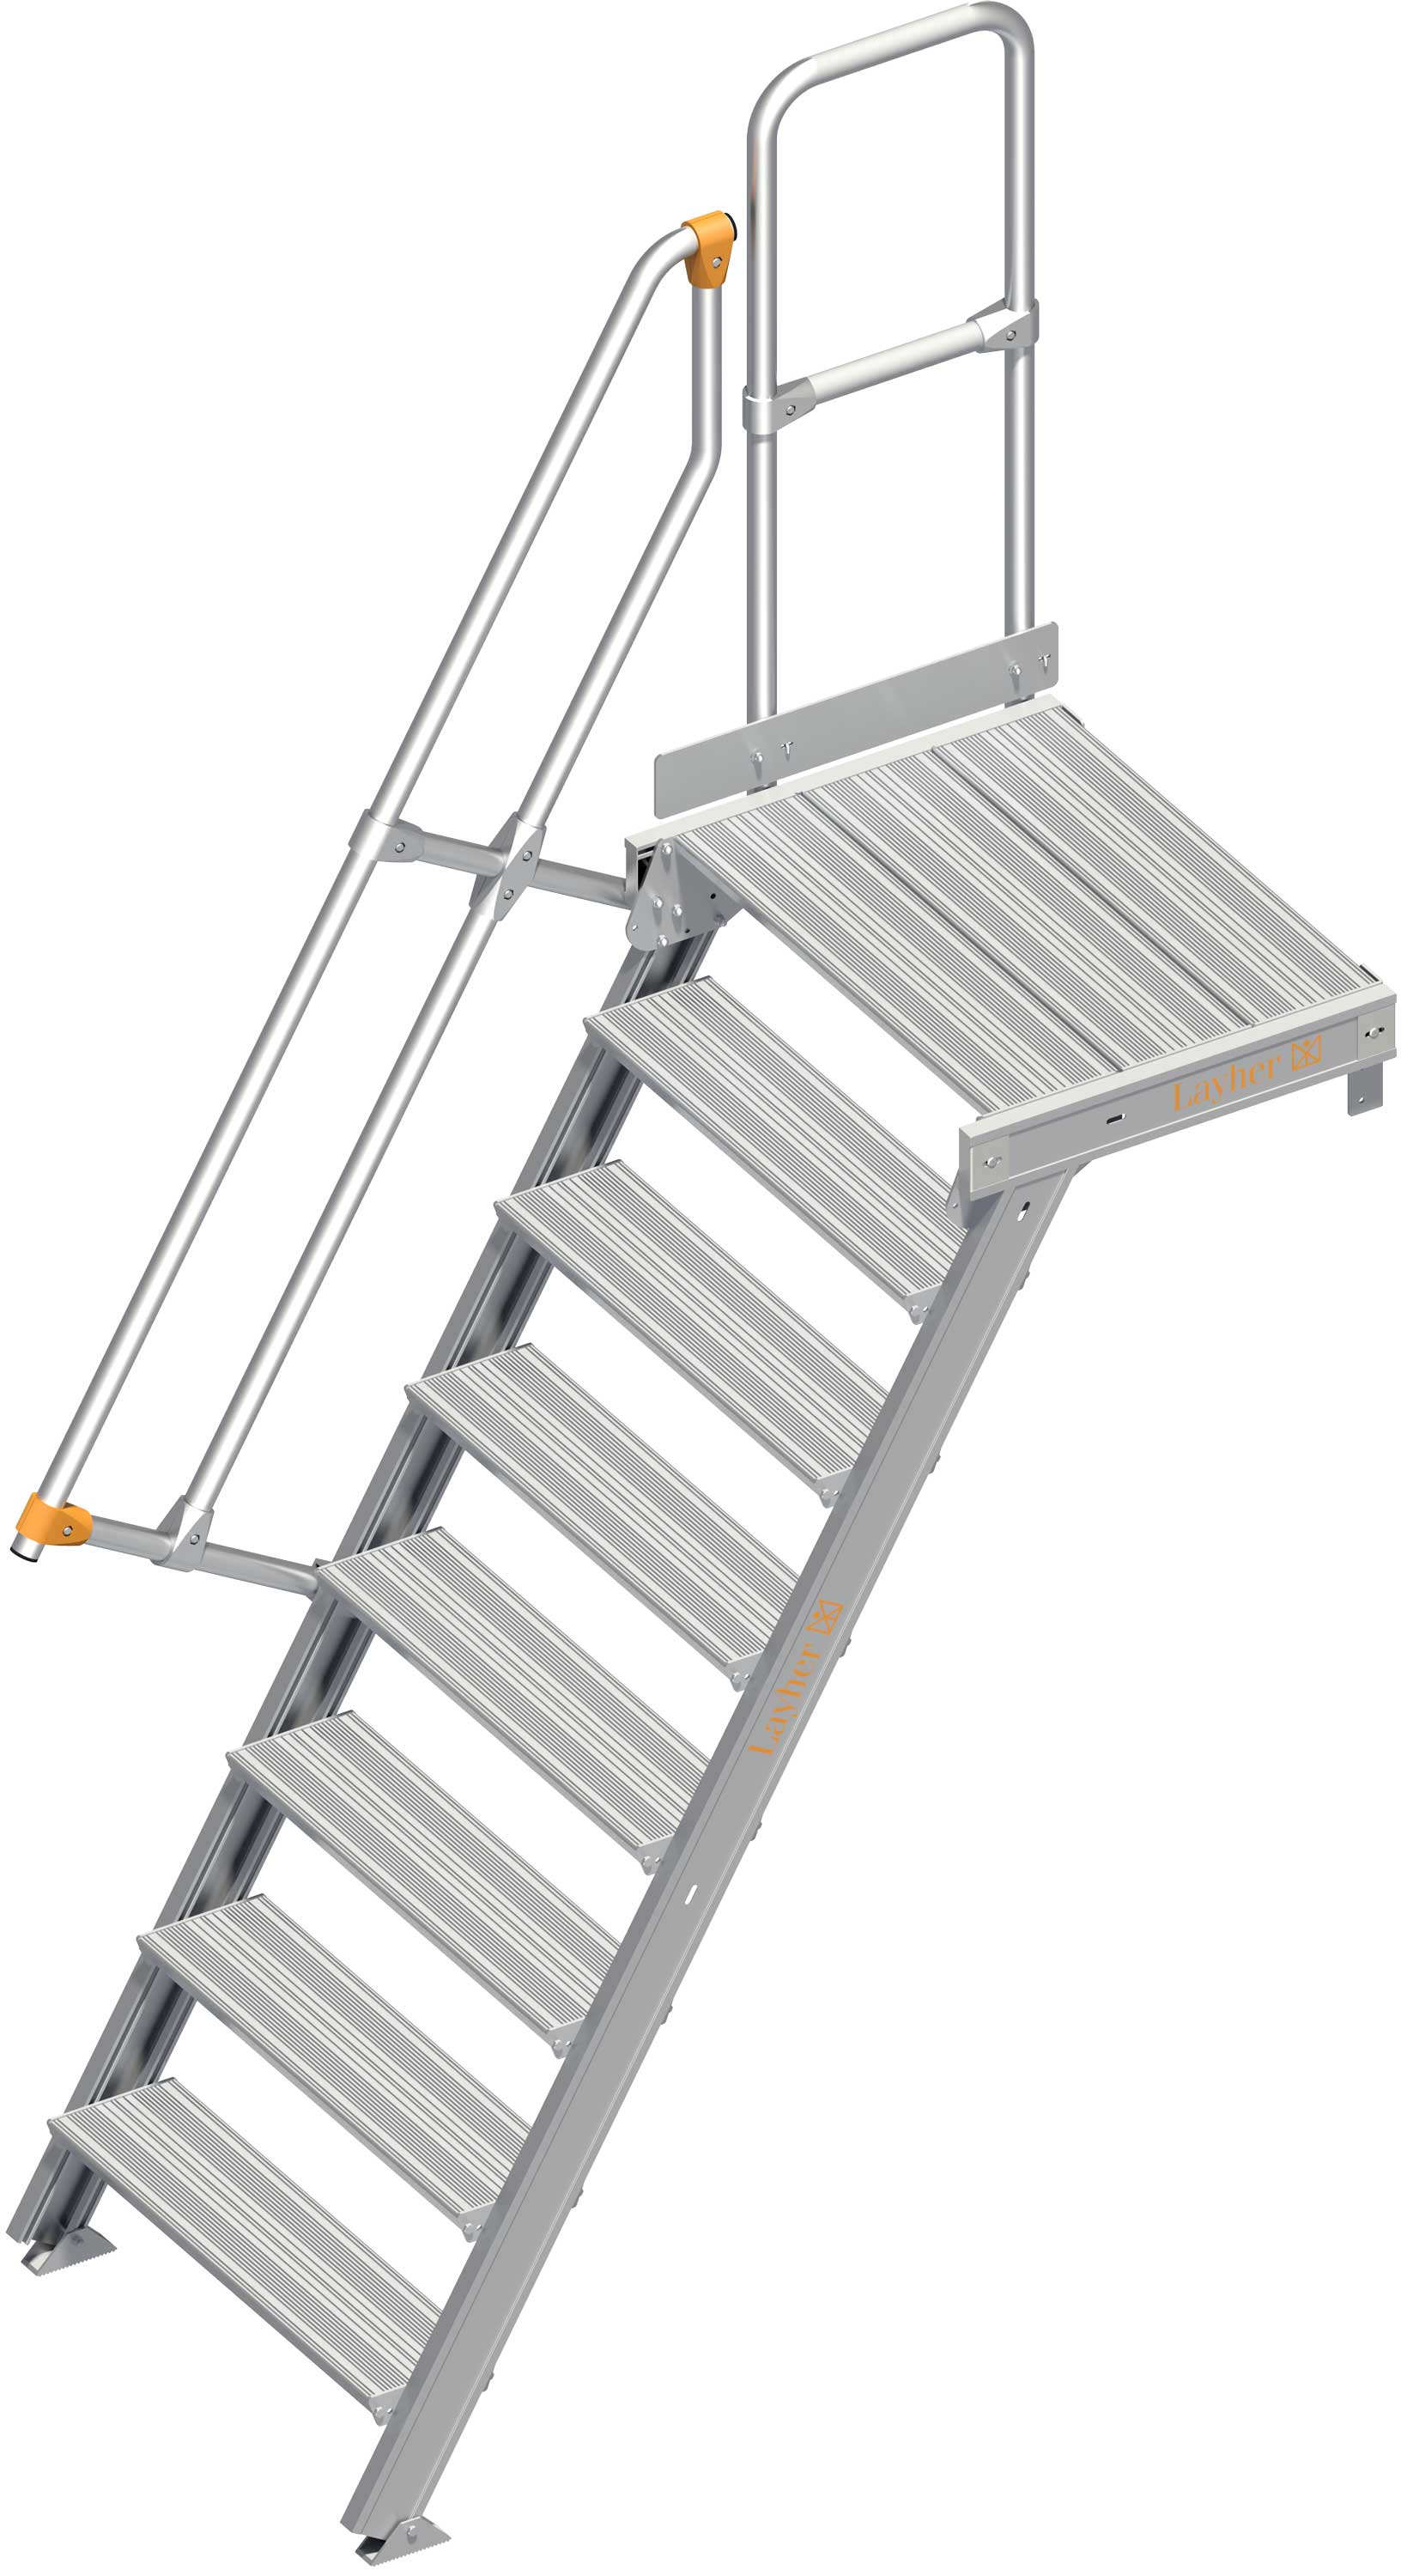 Layher Plattformtreppe 60° 8 Stufen - 800 mm breit